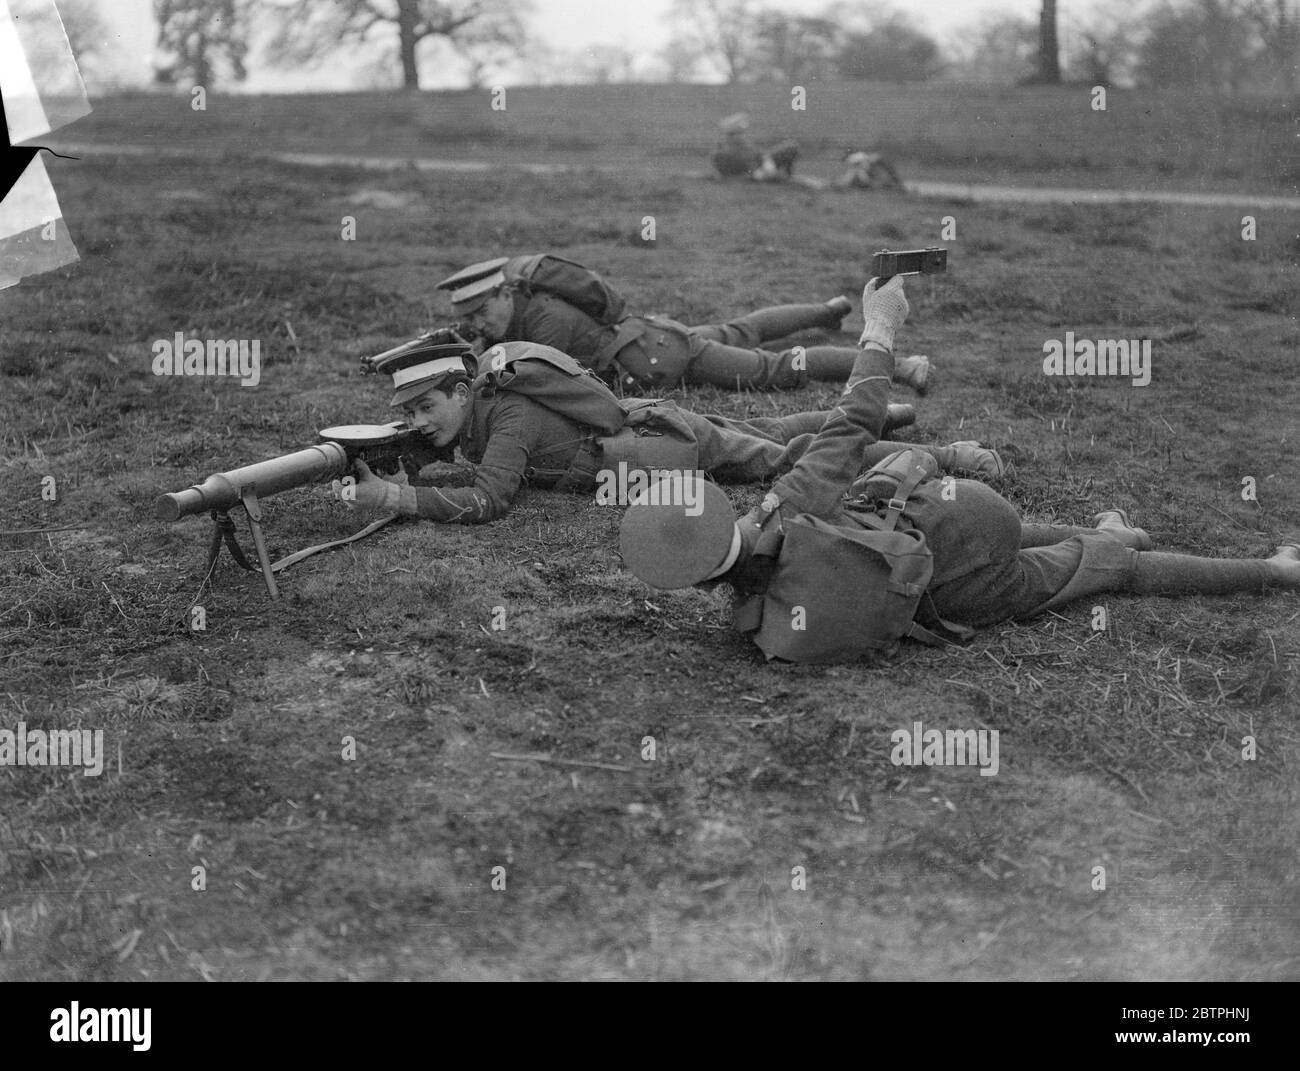 Eton College Field Day . Ein Maschinengewehr Korps, die Maschinengewehr ist Dummy, in der vordersten Linie während der Eton College Field Day Manöver in Windsor Great Park. Beachten Sie den Mann mit einer Rassel, die den Lärm ähnelt der Maschinengewehr 's Rassel macht. 17 März 1932 Stockfoto